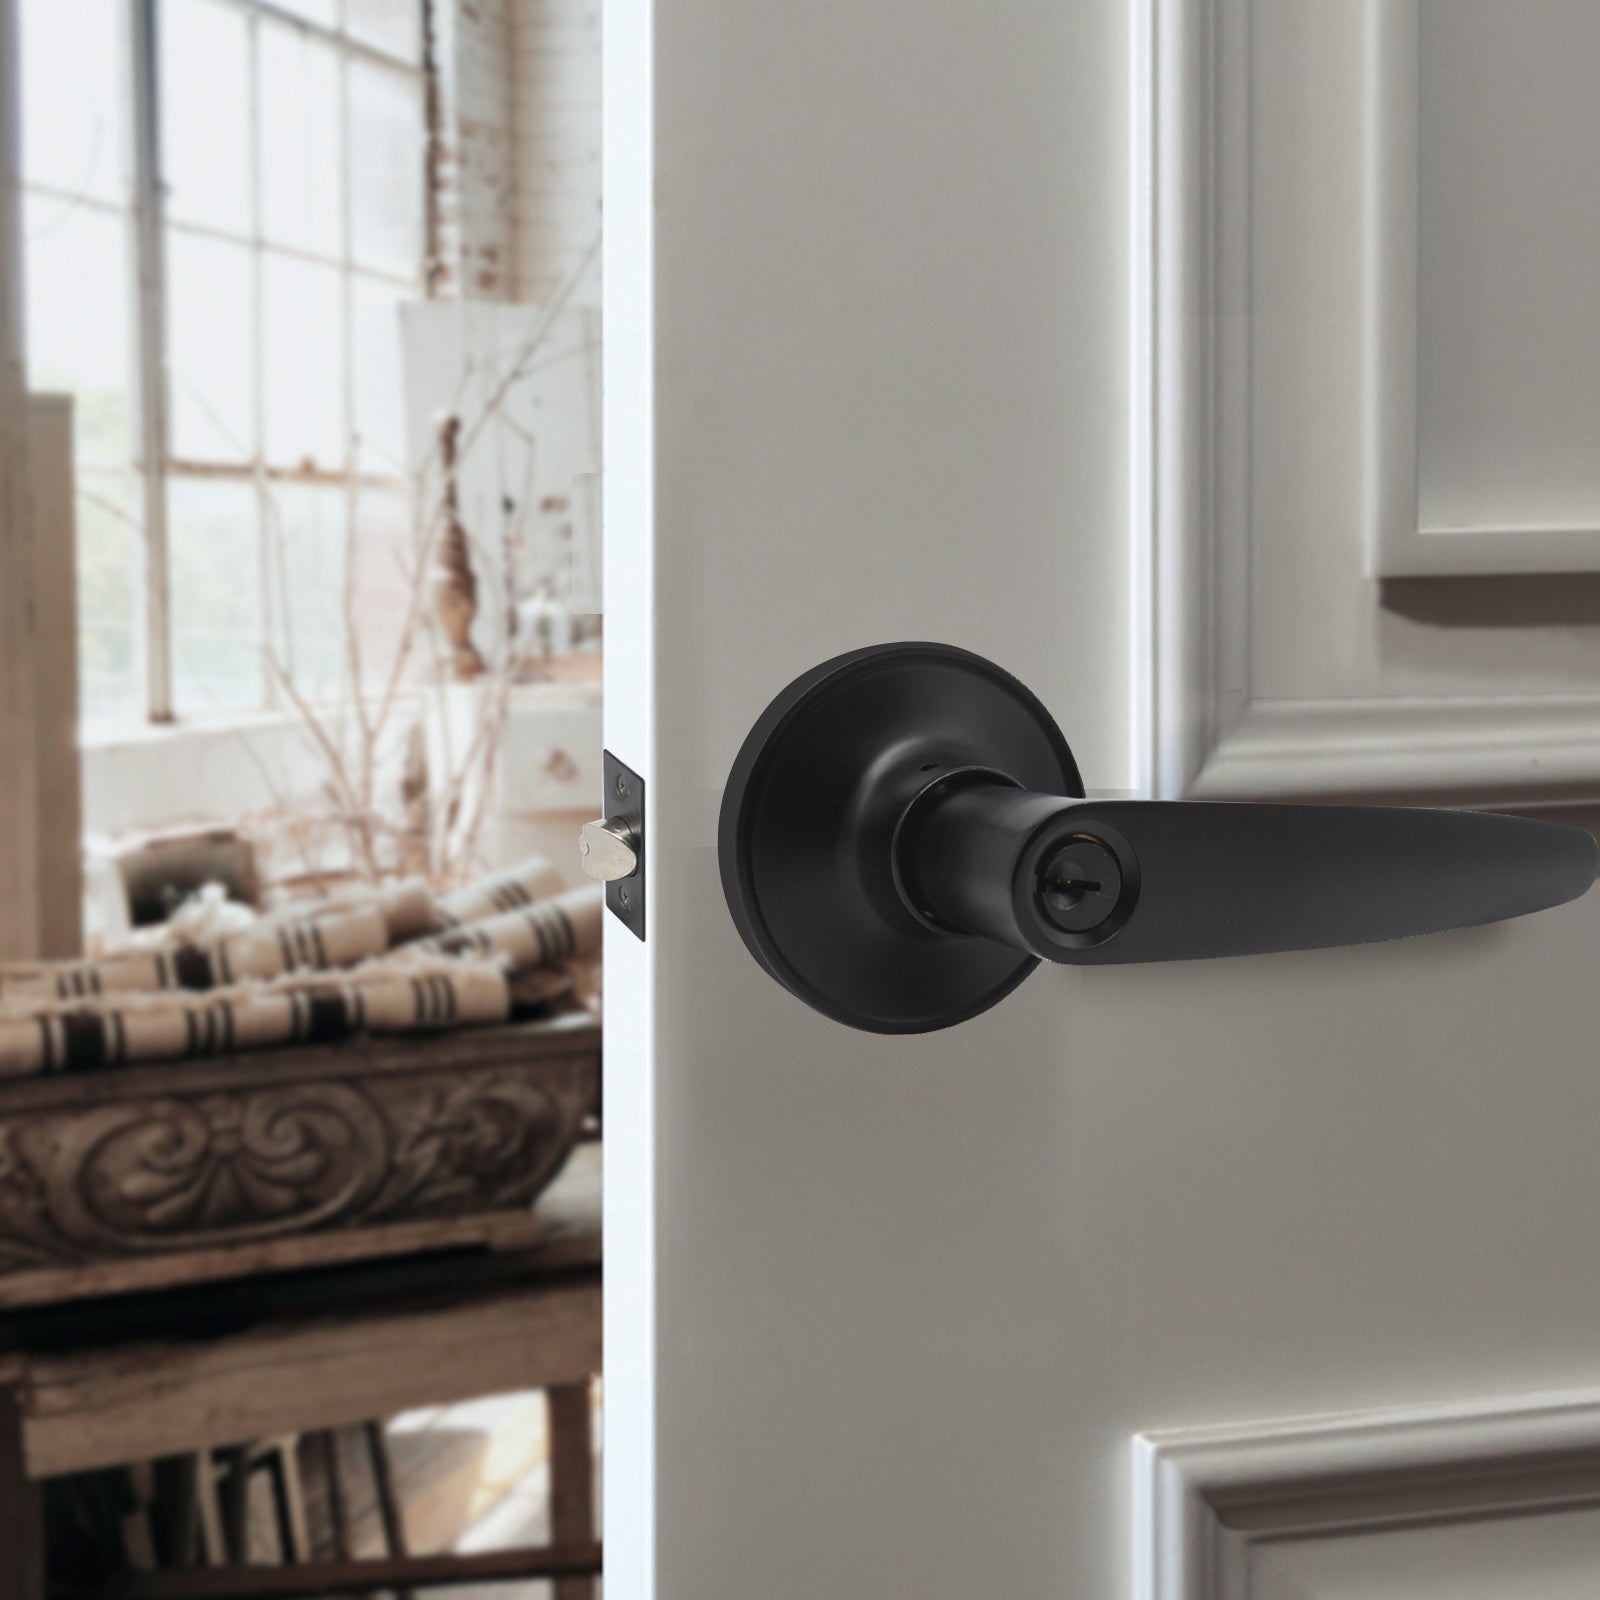 Keyed Entry Door Levers Lockset with Same Key, Leaf Style, Black Finish - Probrico